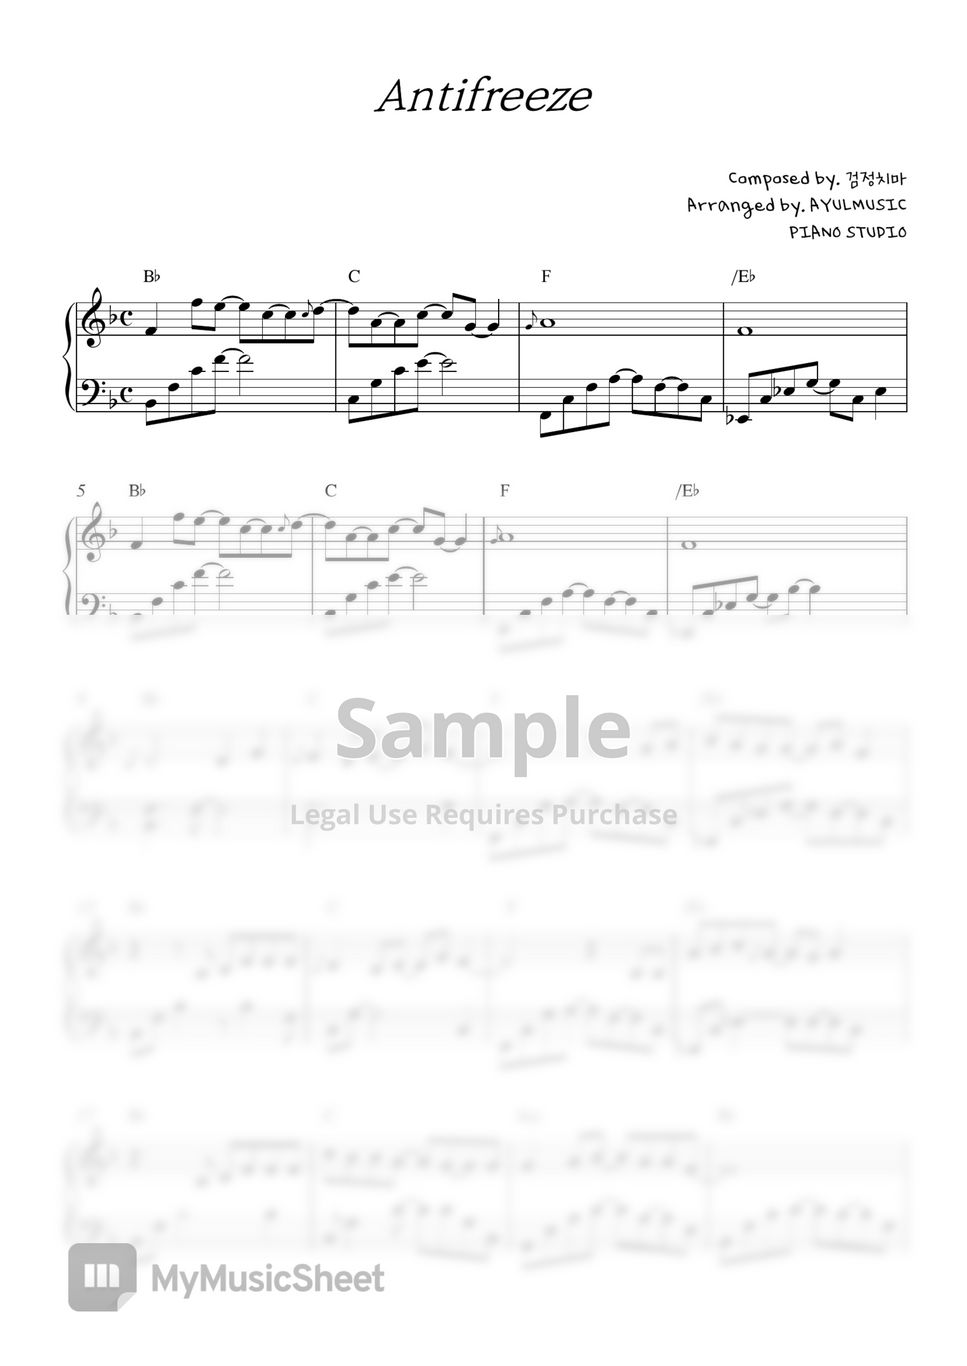 검정치마 - Antifreeze (F Key (1 key down)) by AYULMUSIC PIANO STUDIO